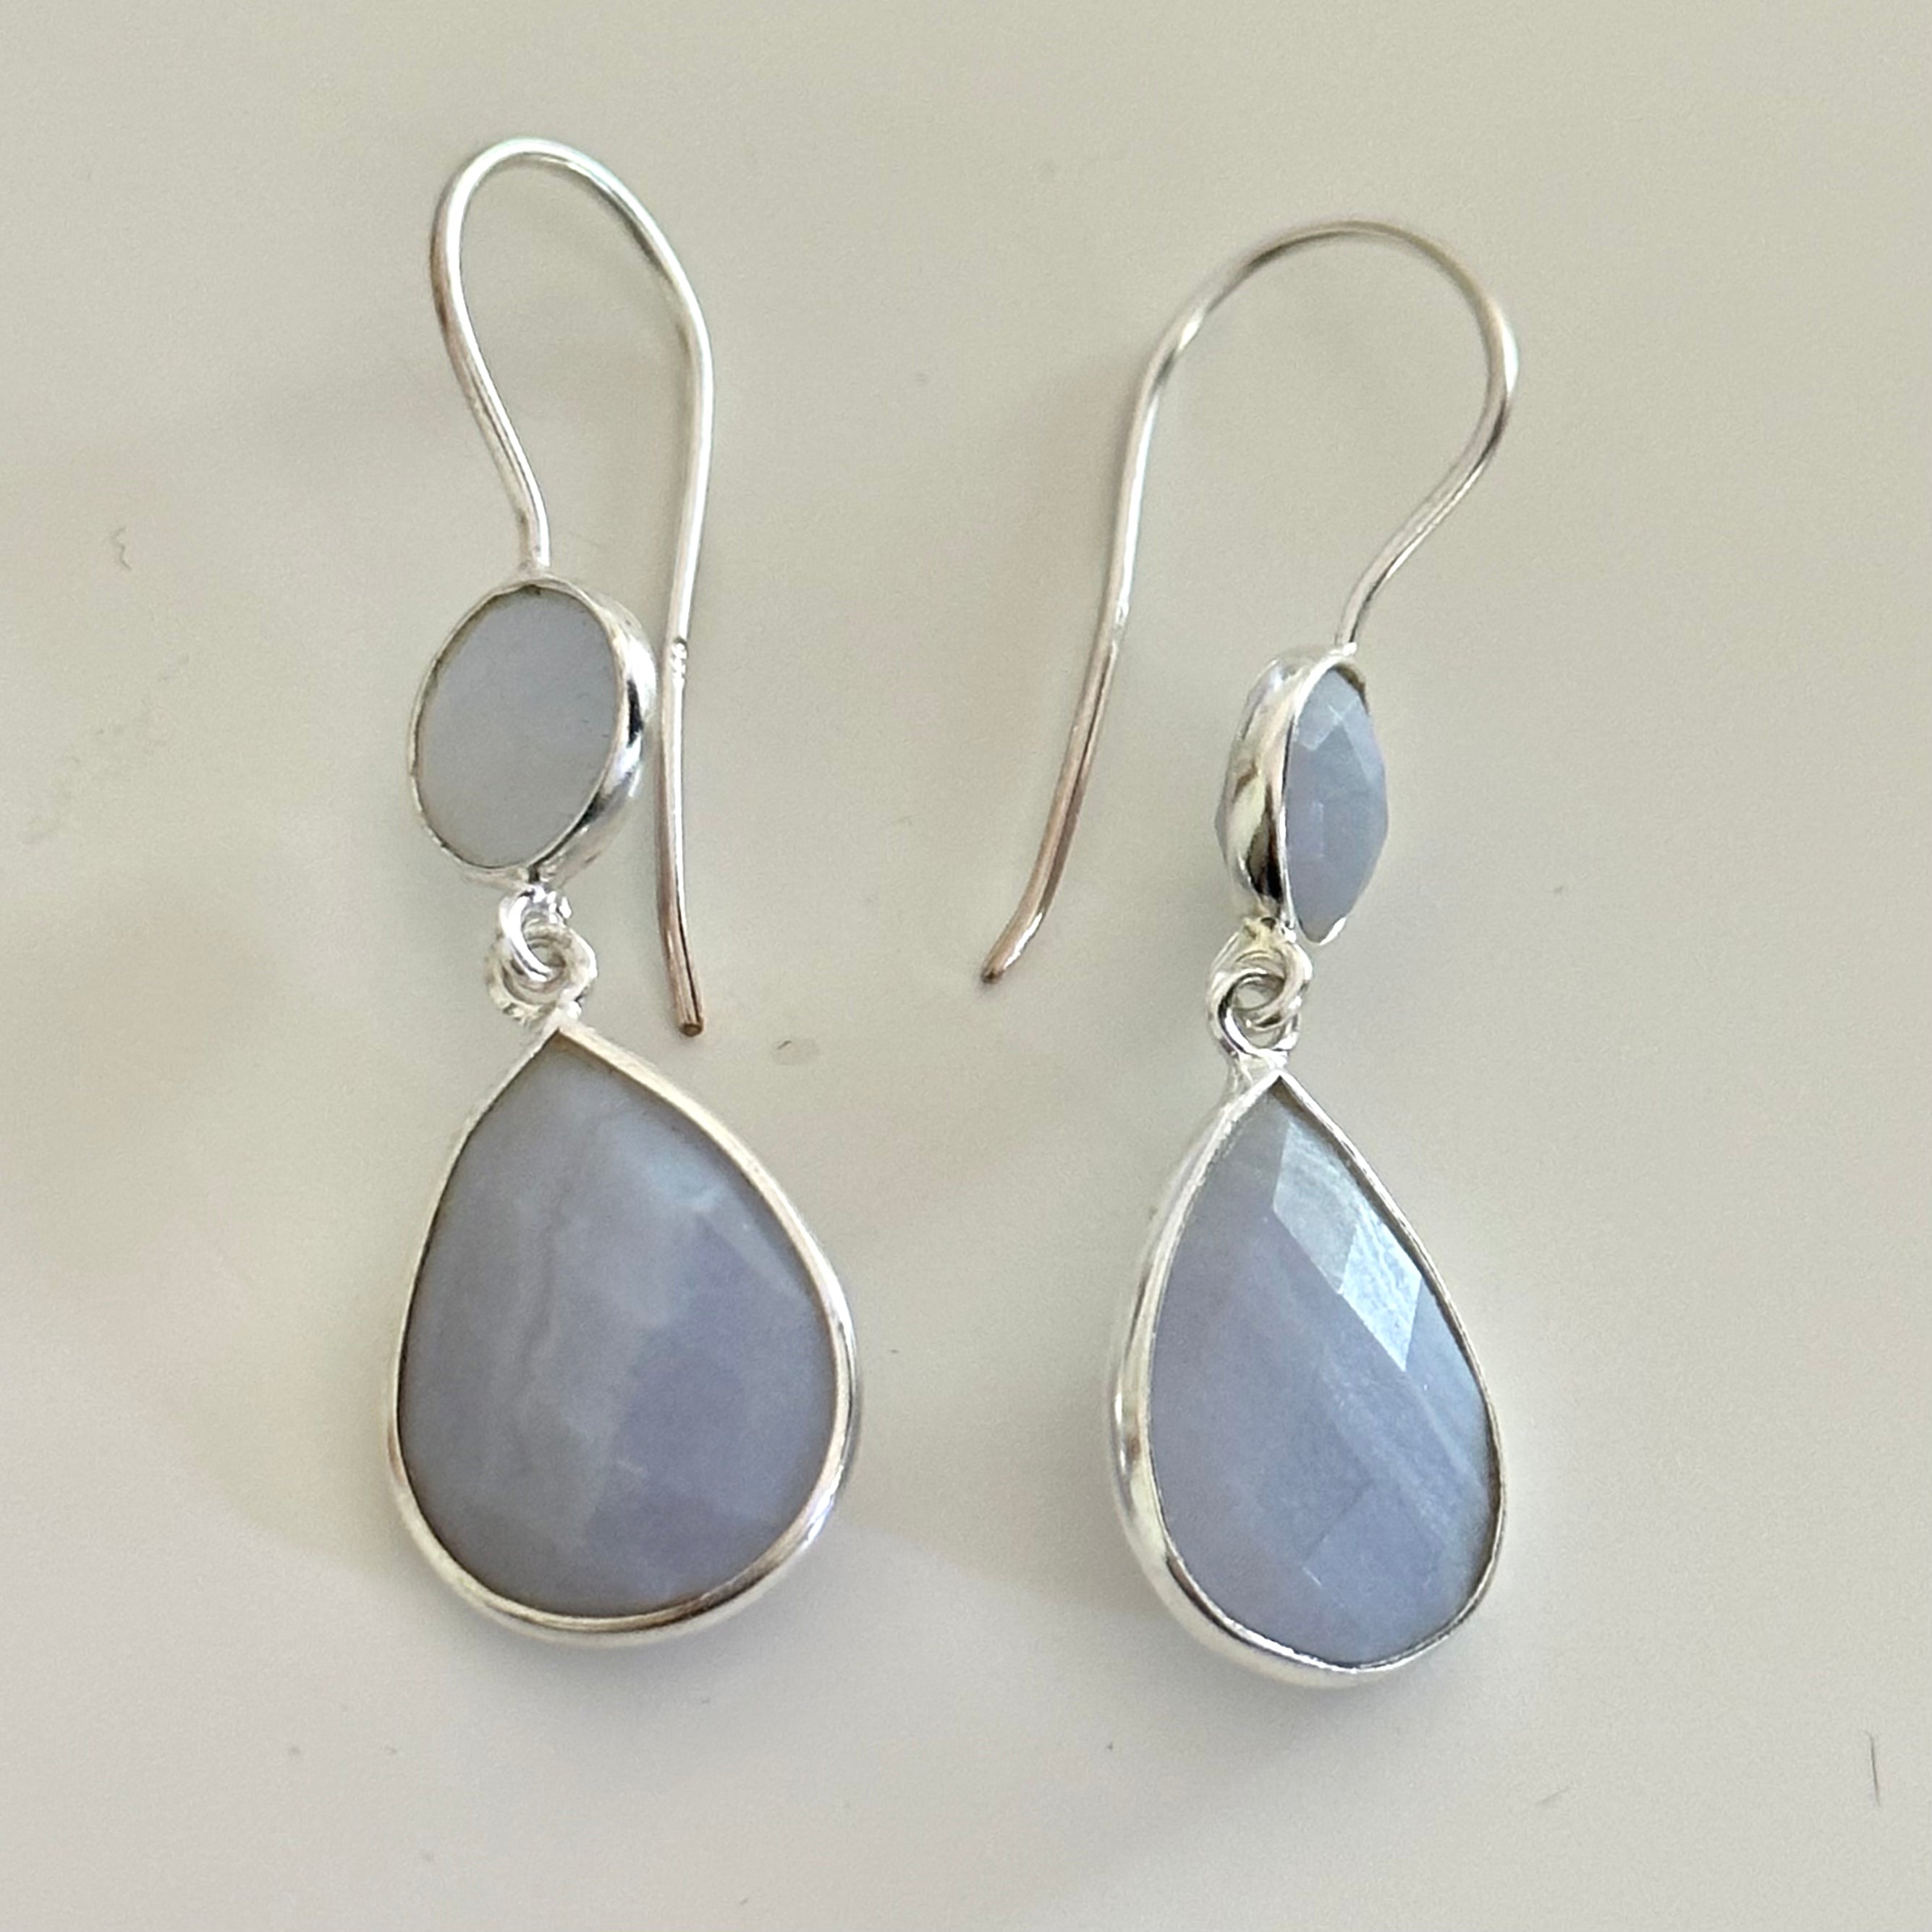 Blue Laced Agate Gemstone Two Stone Earrings in Sterling Silver - Teardrop